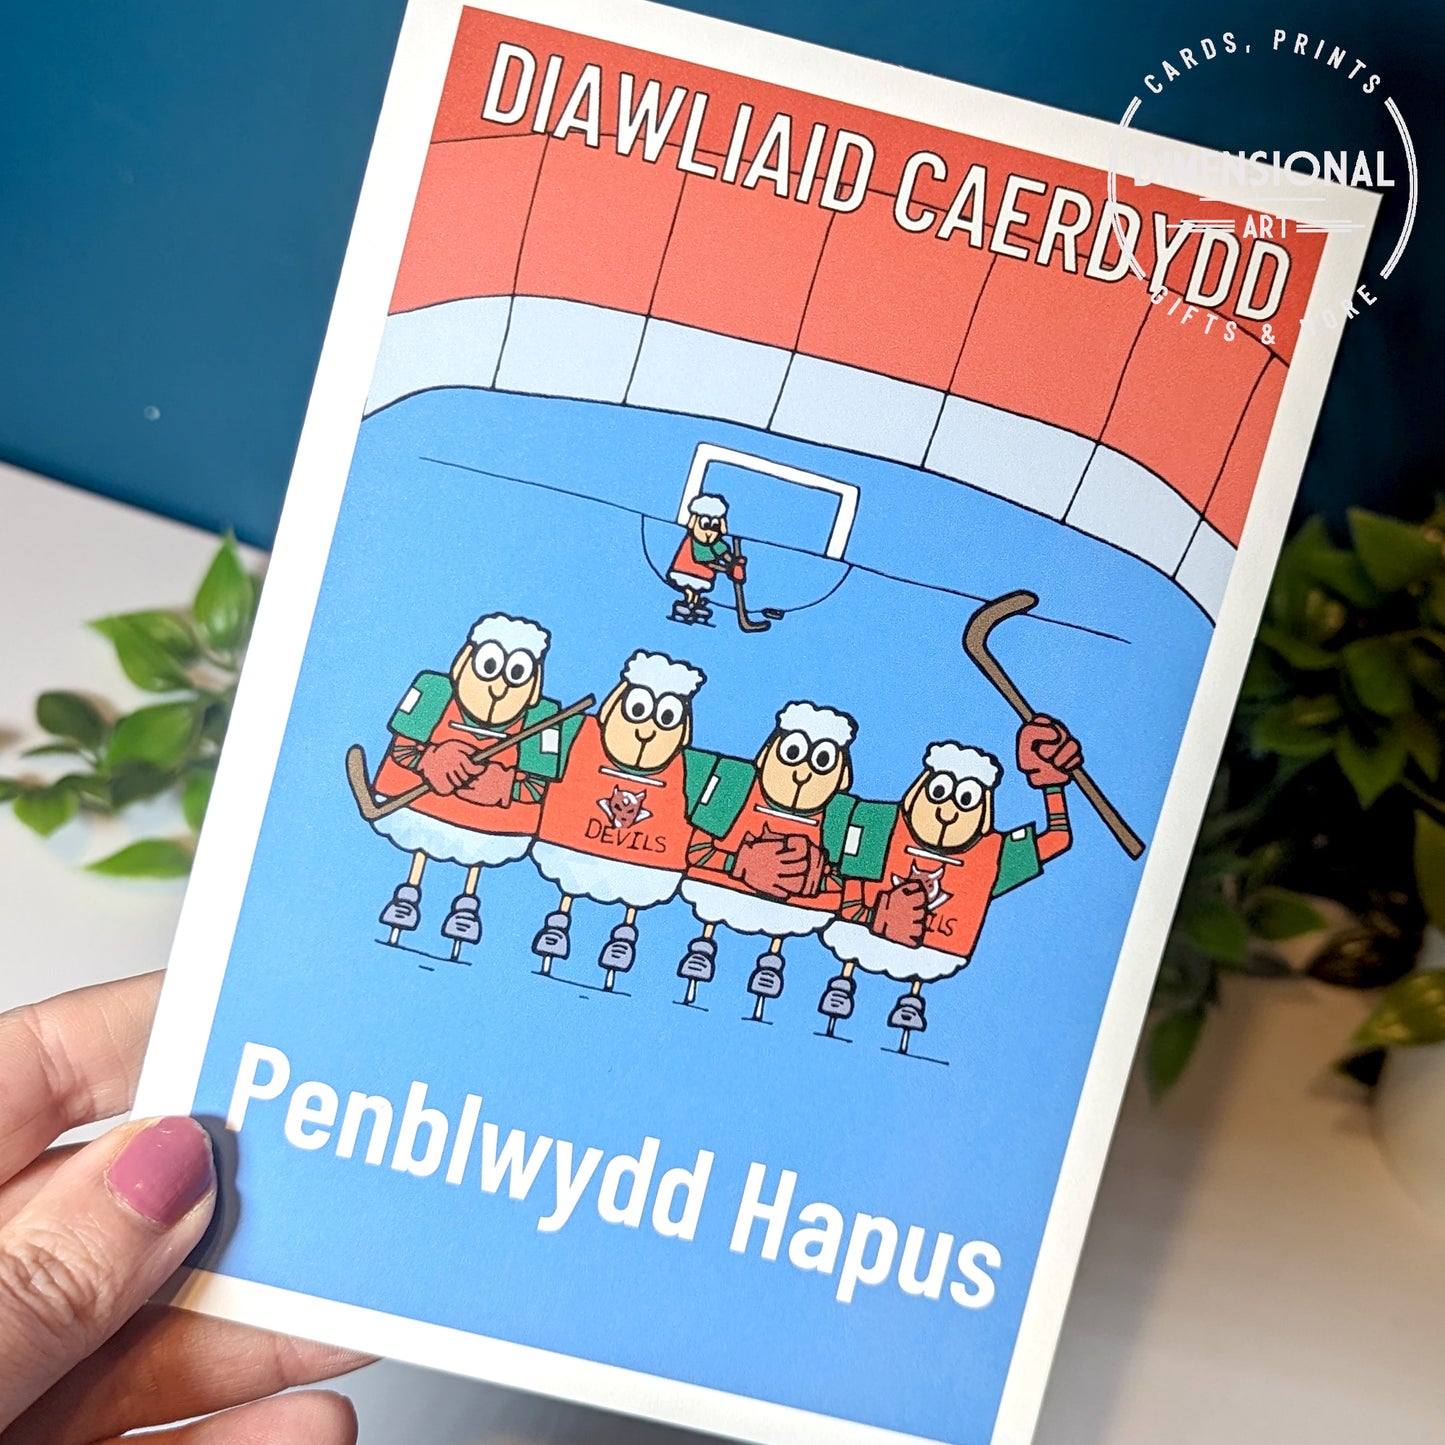 Diawliaid Caerdydd (Cardiff Devils) Sheep Card  (Birthday) - WELSH